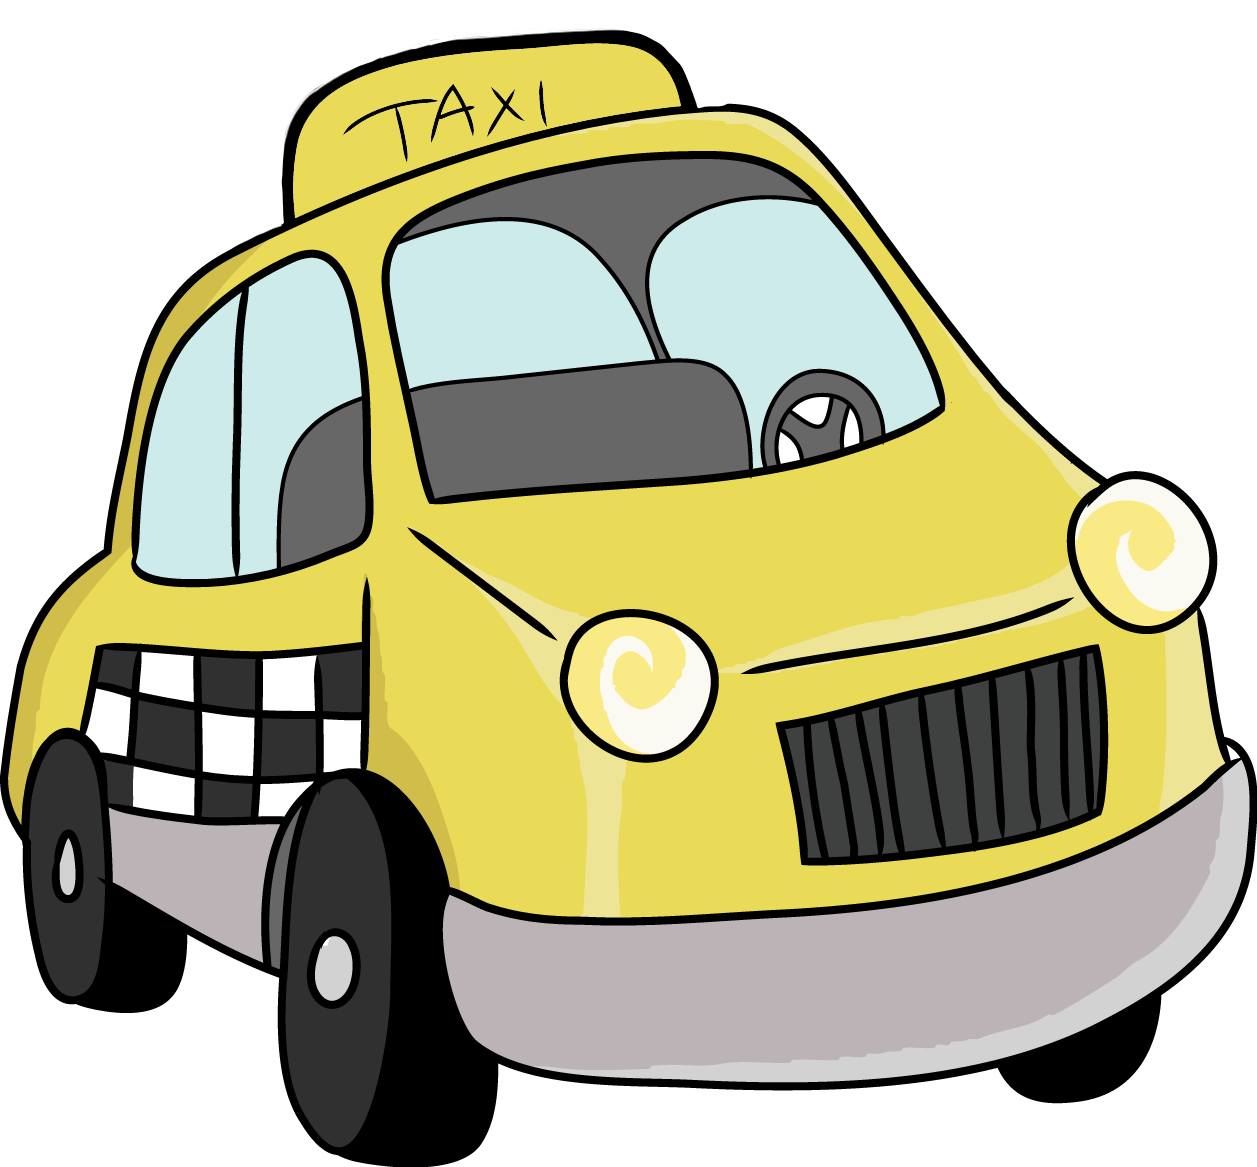 Taxi Cab Clipart-Clipartlook. - Taxi Cab Clipart